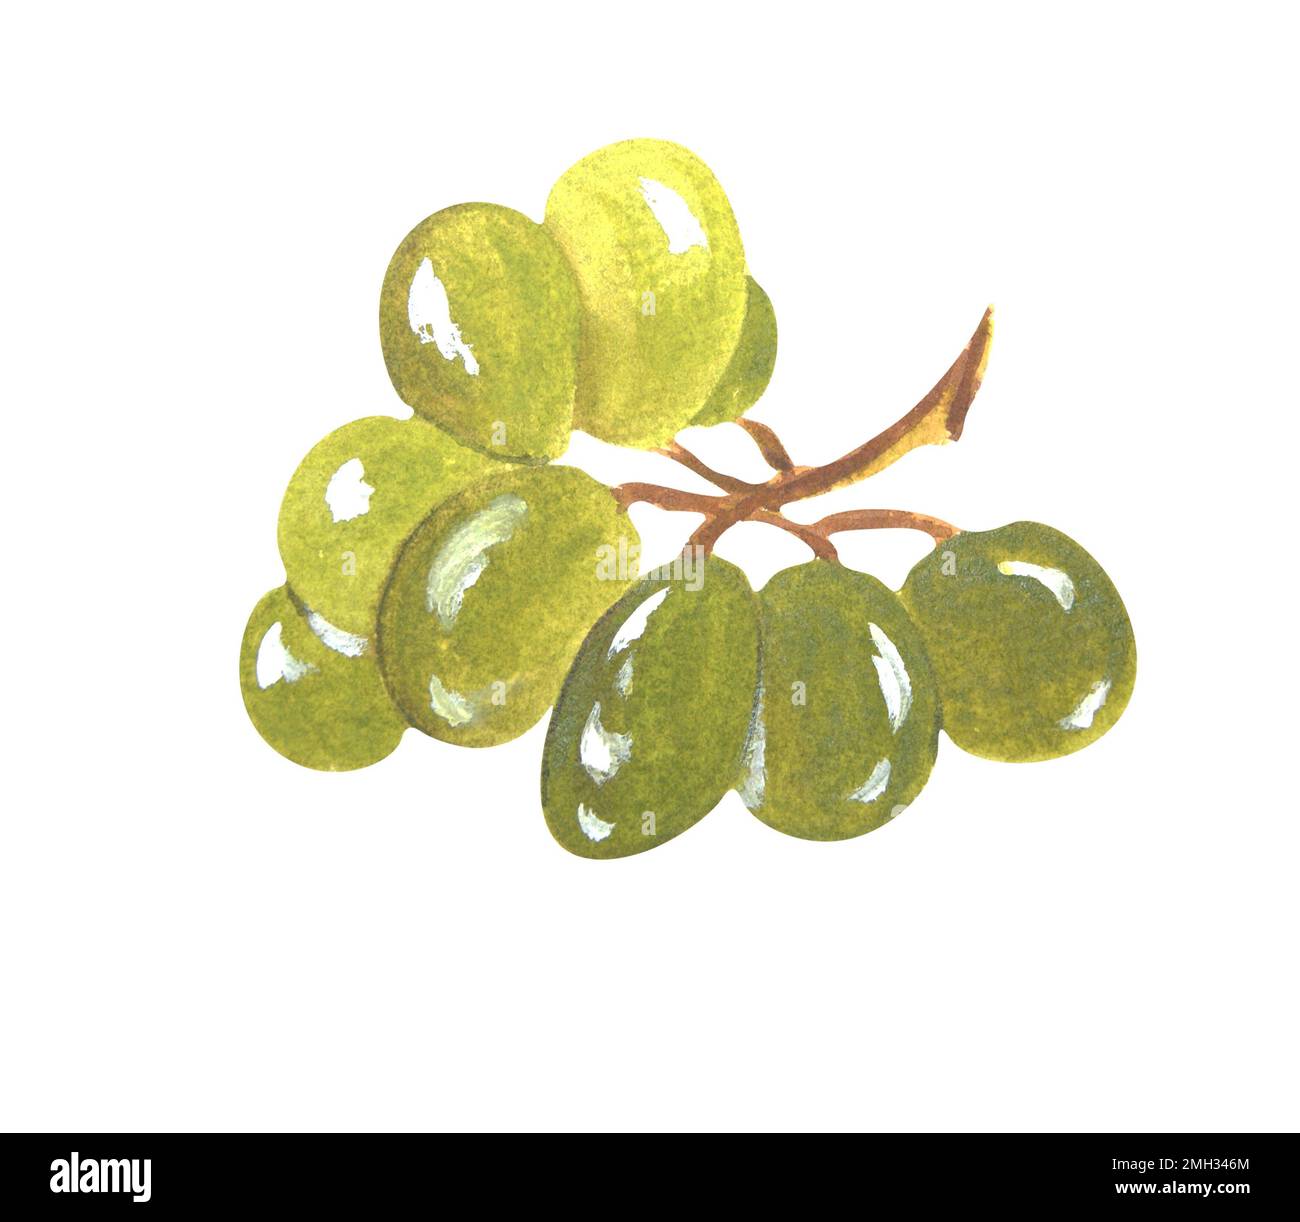 Composition aquarelle des raisins sur fond blanc. La trame peut être utilisée comme élément pour les projets, les marchandises, les cartes postales et les marques commerciales Banque D'Images